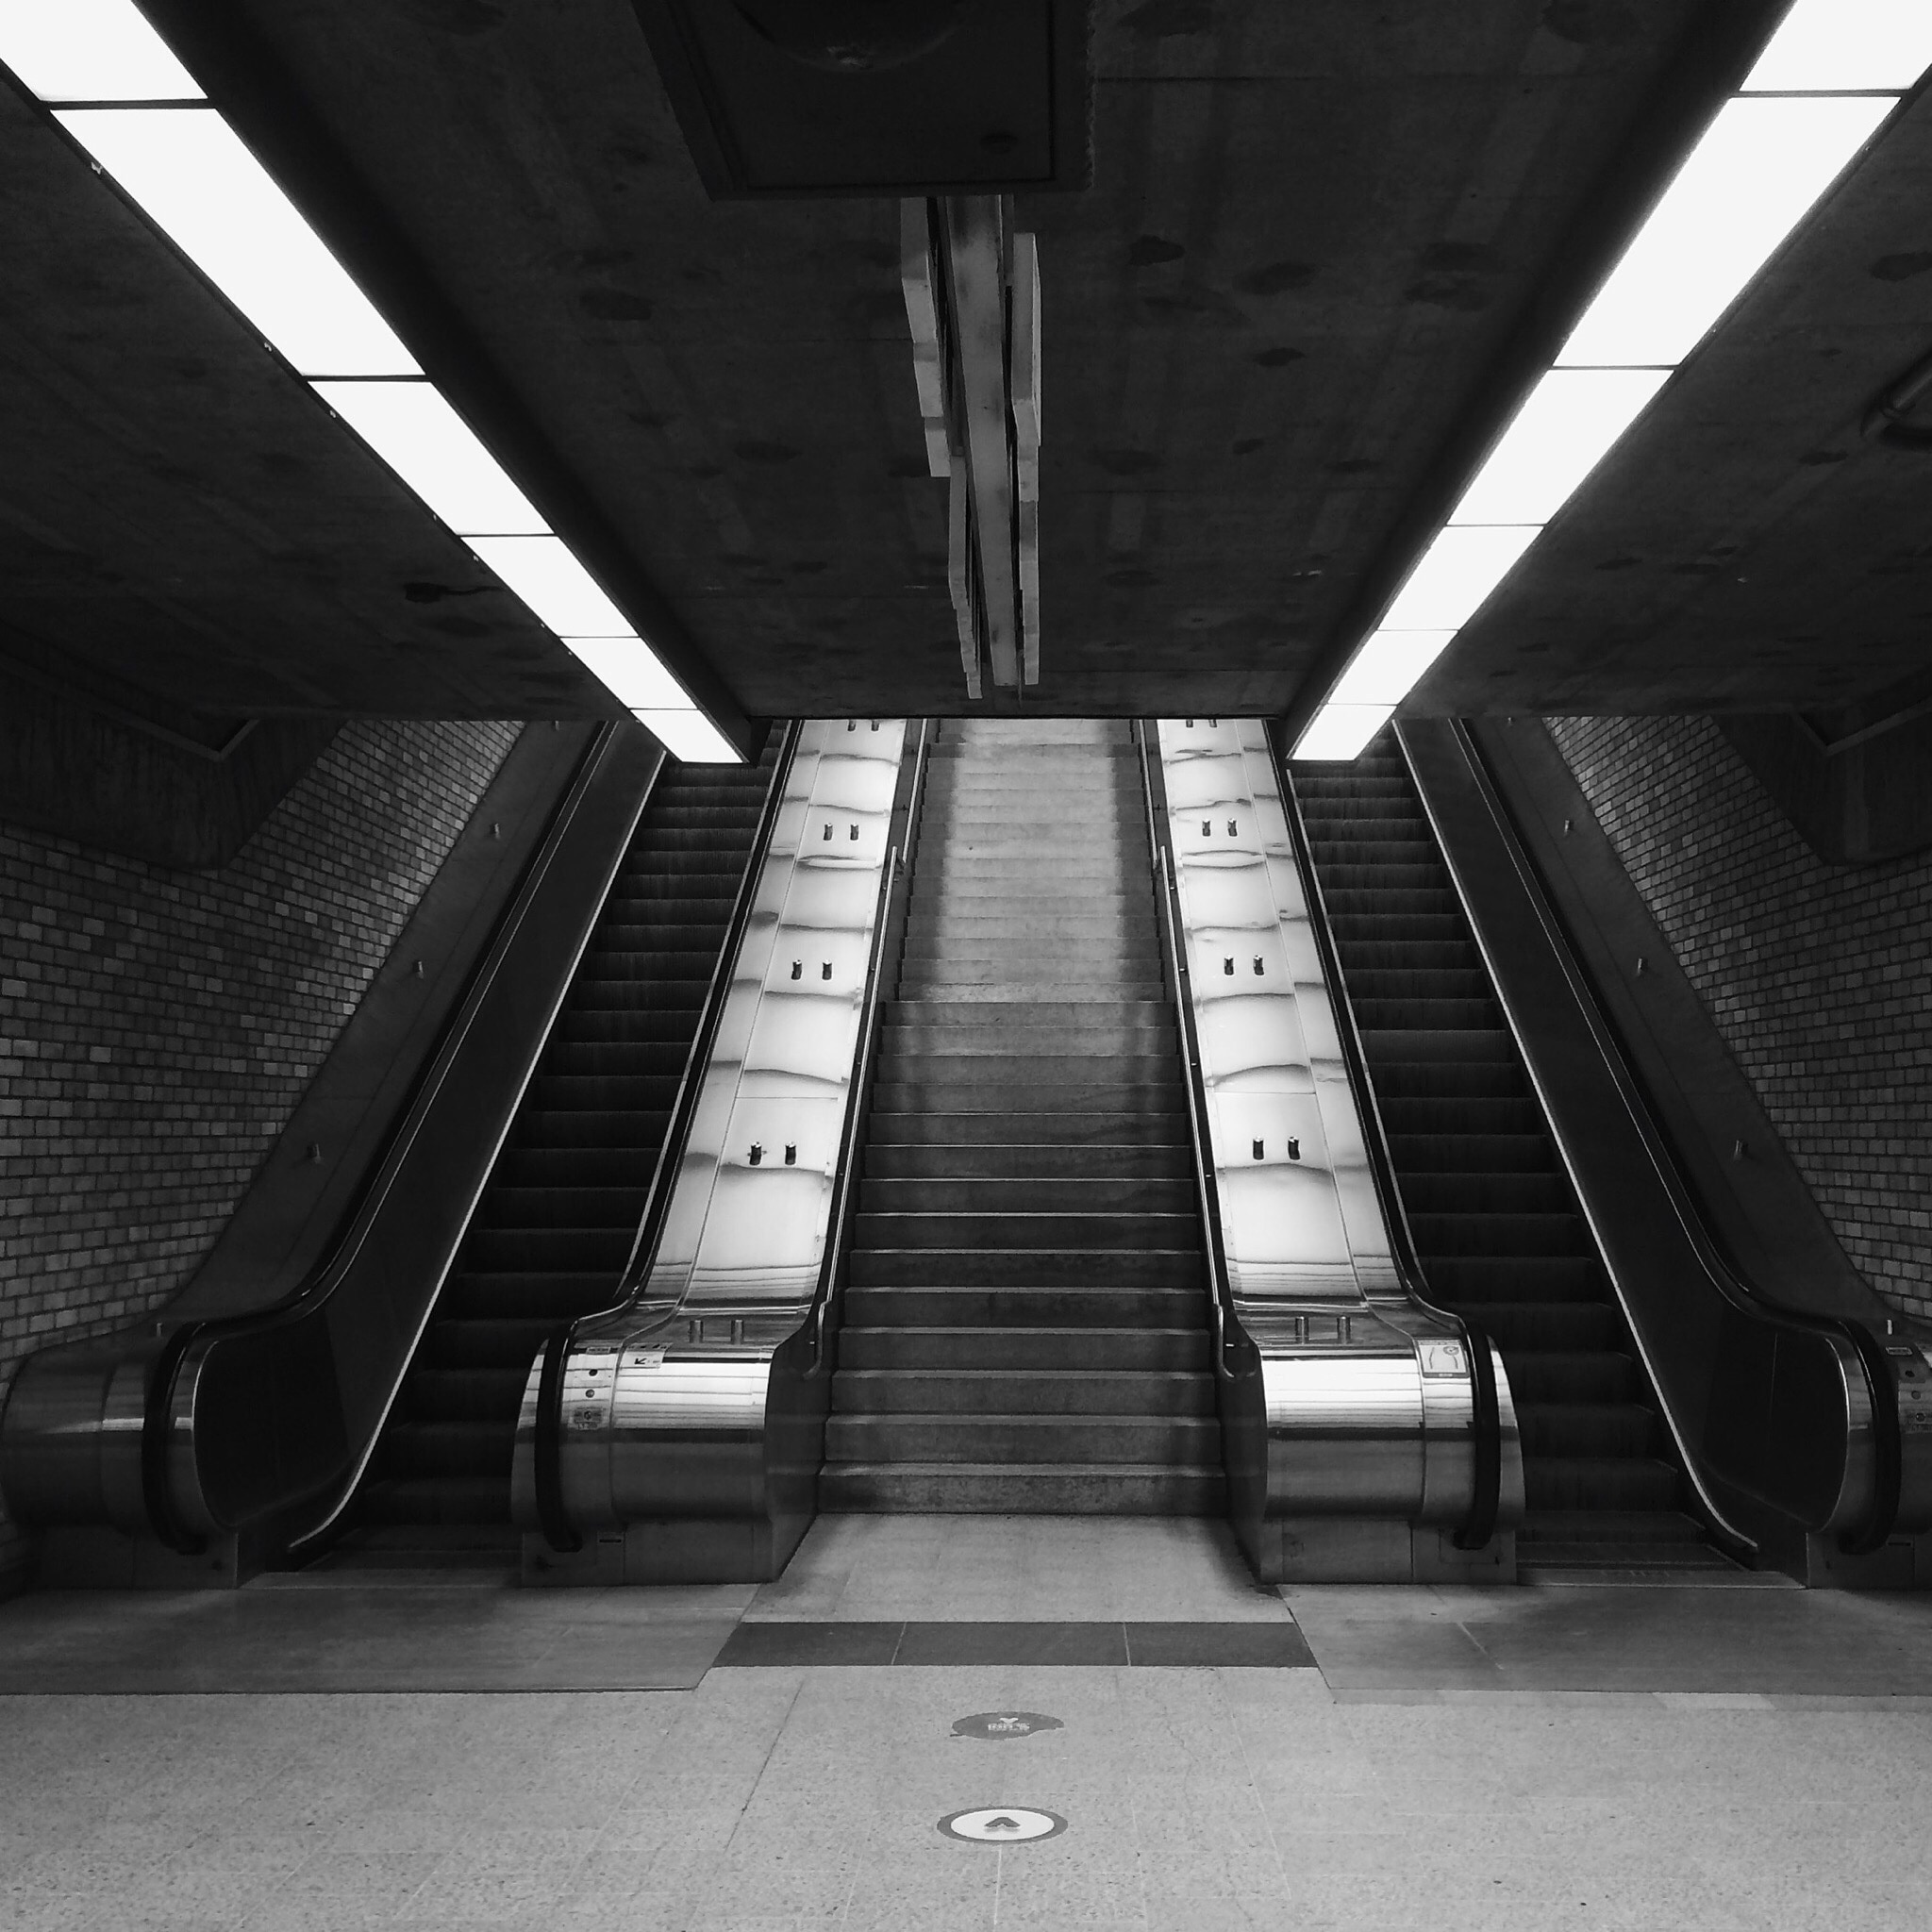 Montreal underground #montreal #metro #urban